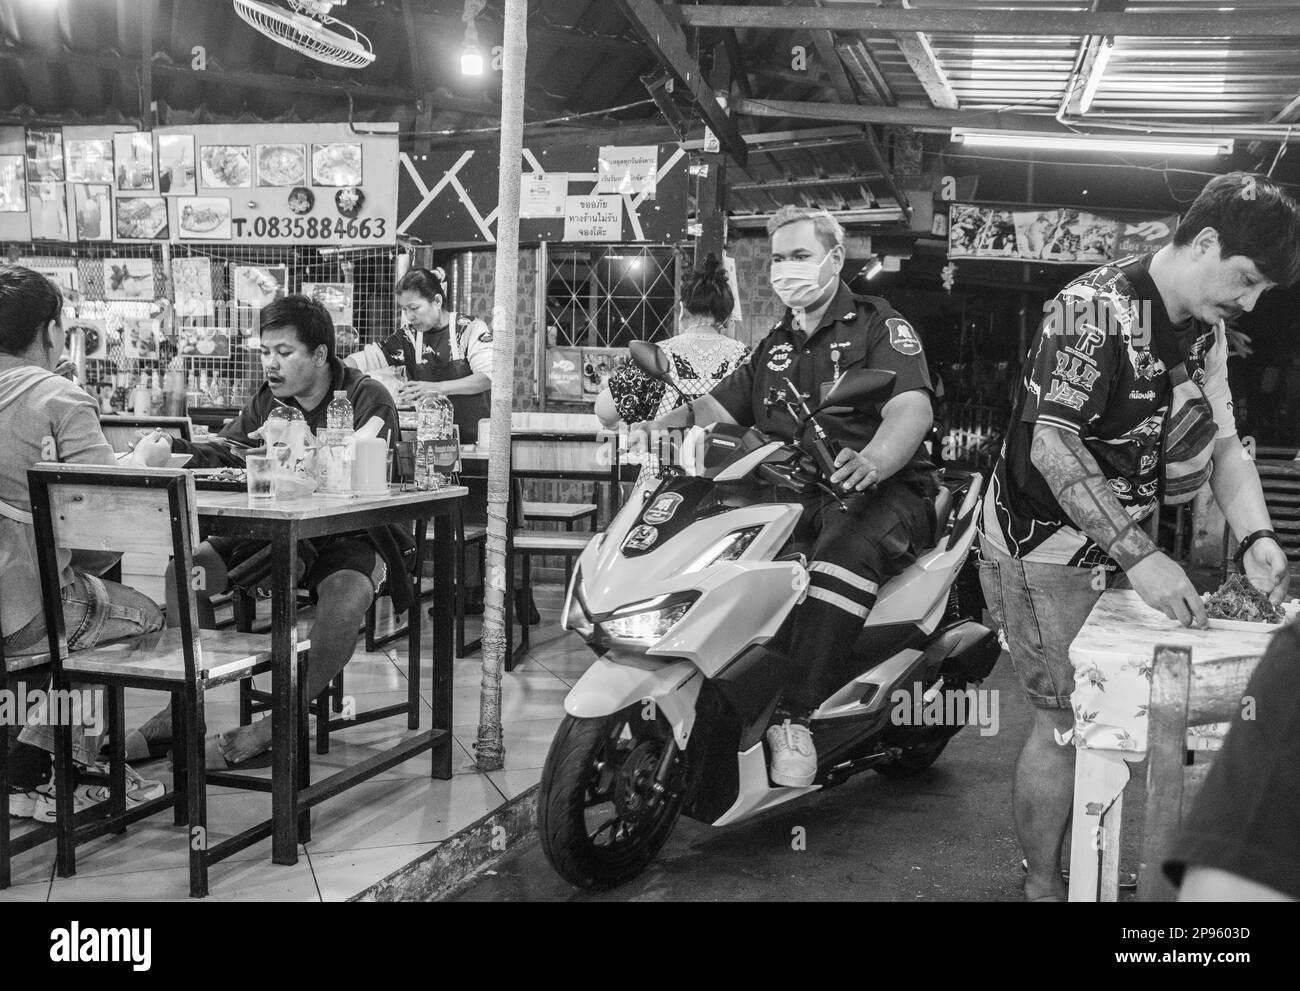 Un restaurant de rue traditionnel avec un passage étroit pour les scooters en Thaïlande Asie Banque D'Images